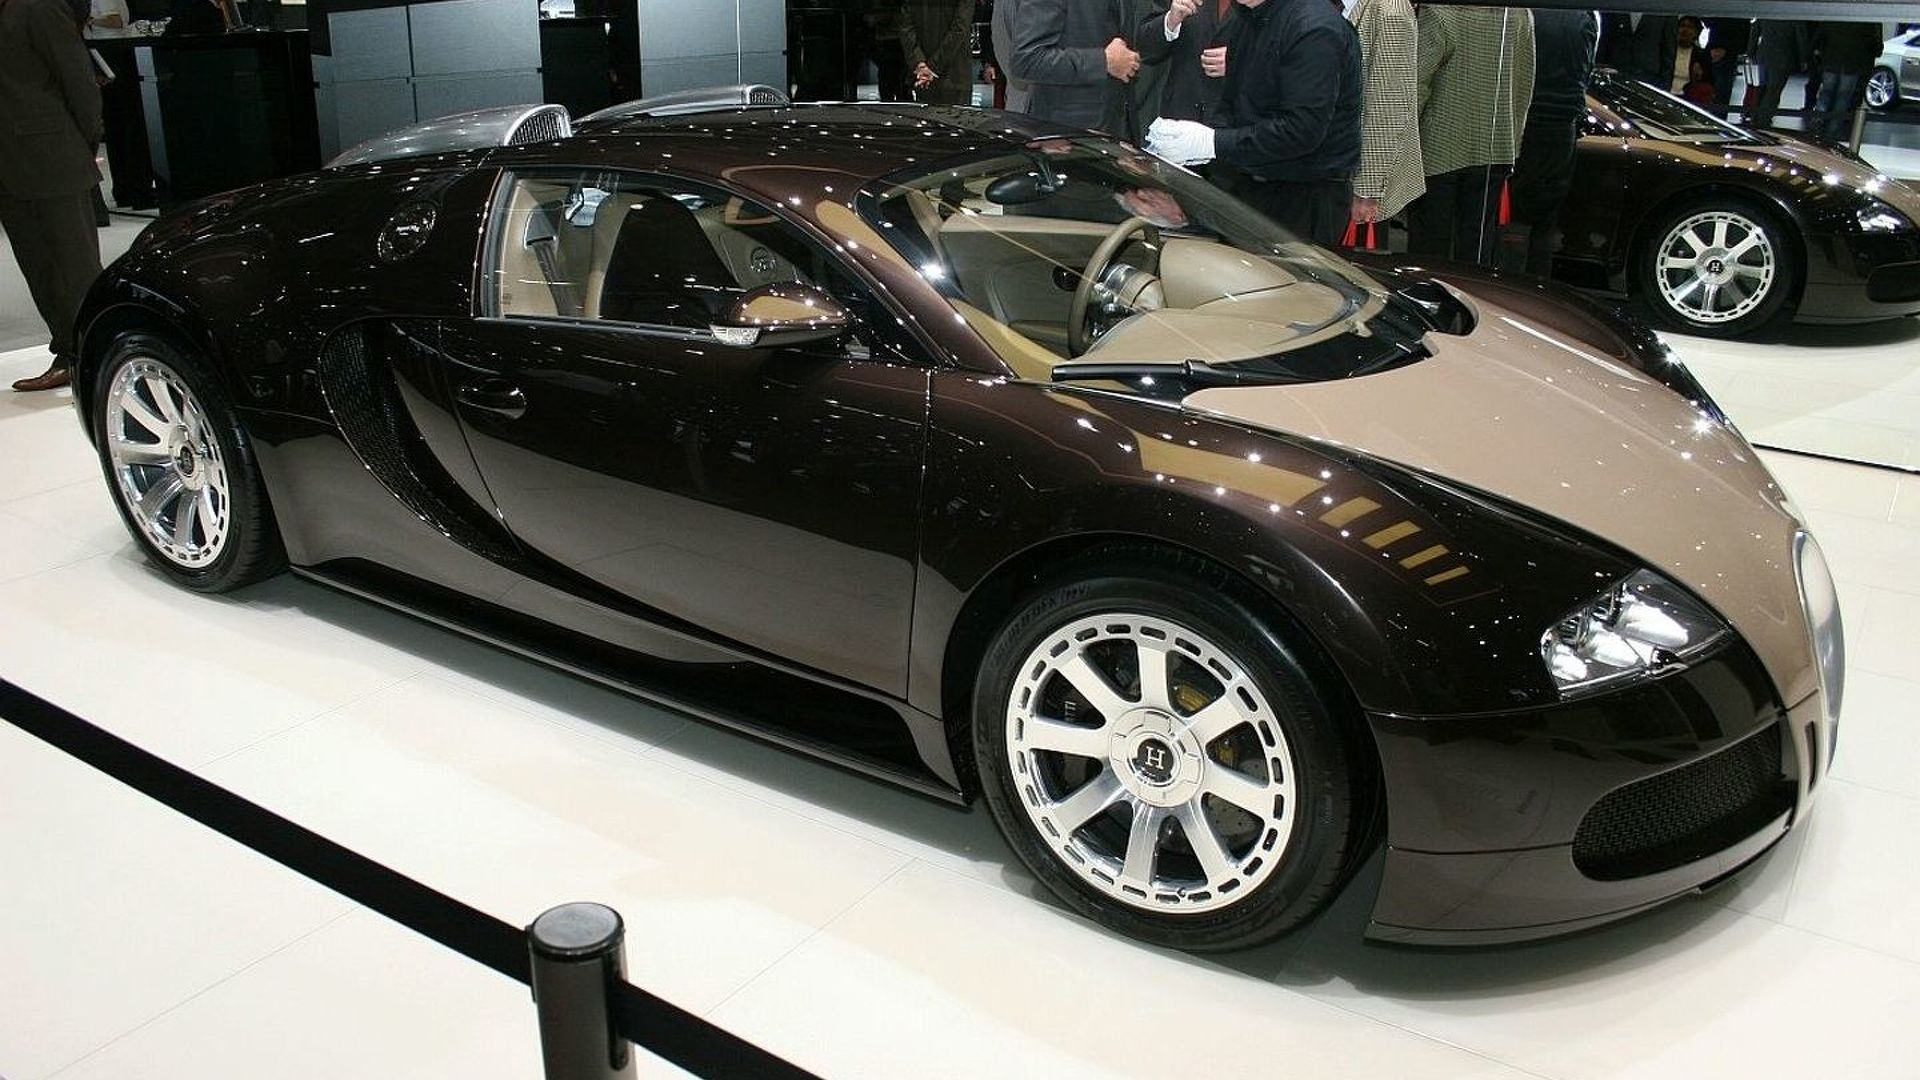 Frank Buyanga's Bugatti Veyron Fbg Par Hermes